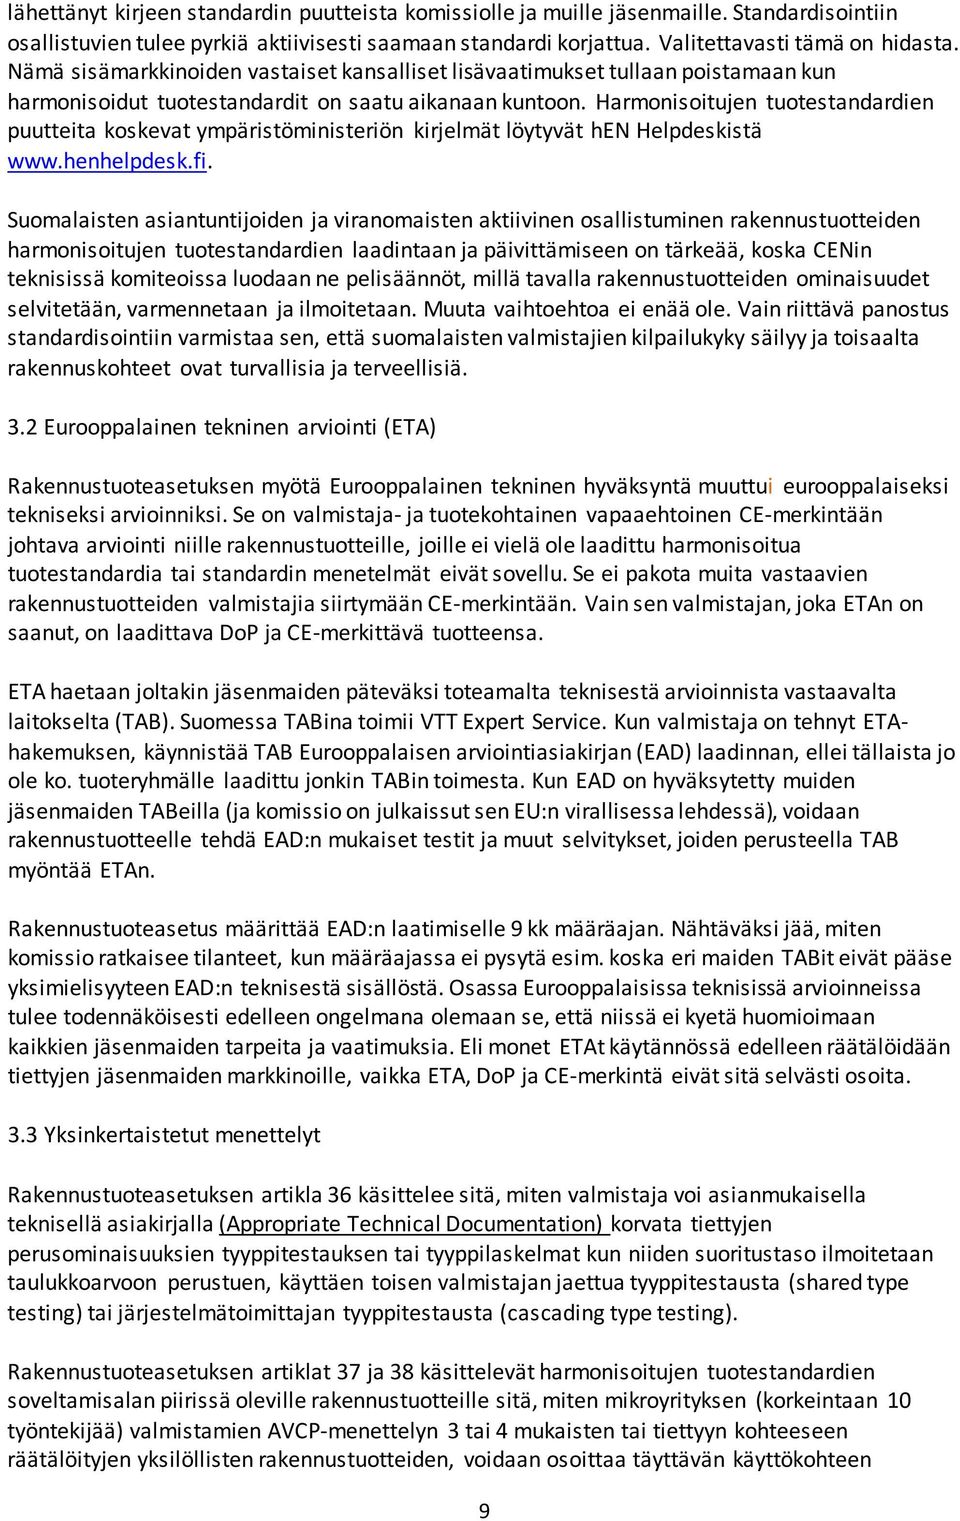 Harmonisoitujen tuotestandardien puutteita koskevat ympäristöministeriön kirjelmät löytyvät hen Helpdeskistä www.henhelpdesk.fi.